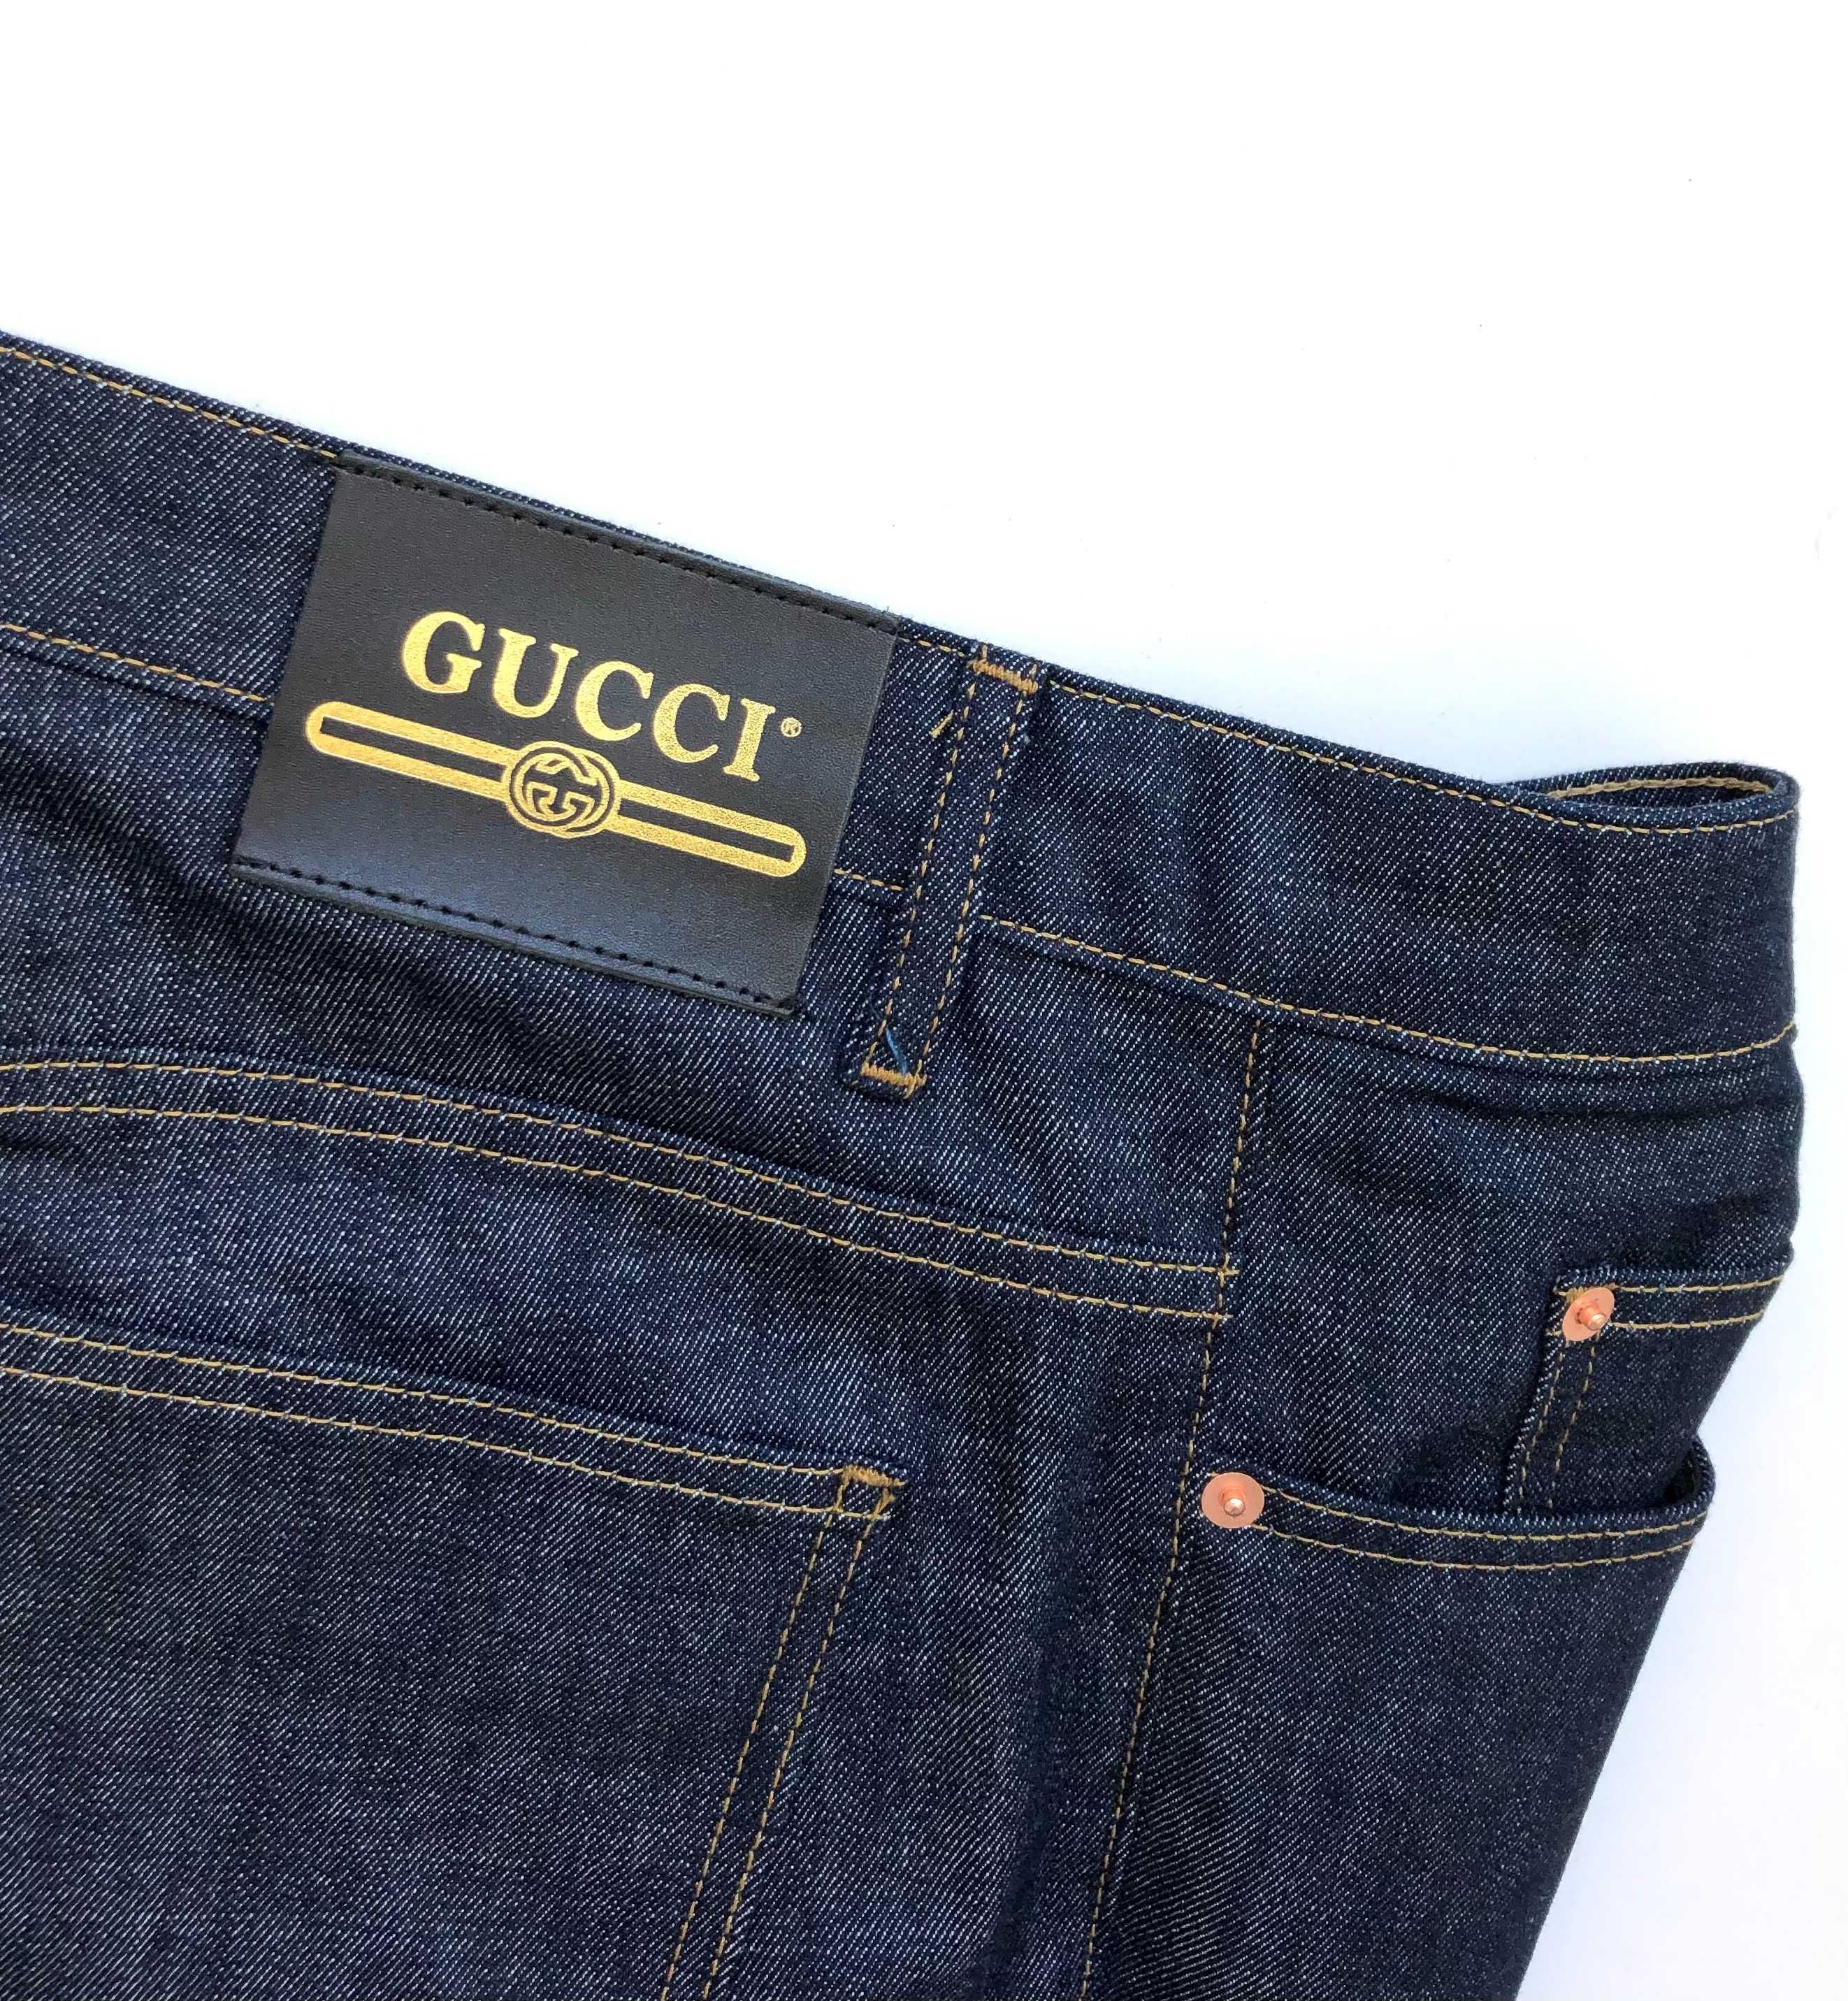 G u c c i - spodnie jeans denim 31, 32, 33, 34, 36 różne rozmiary